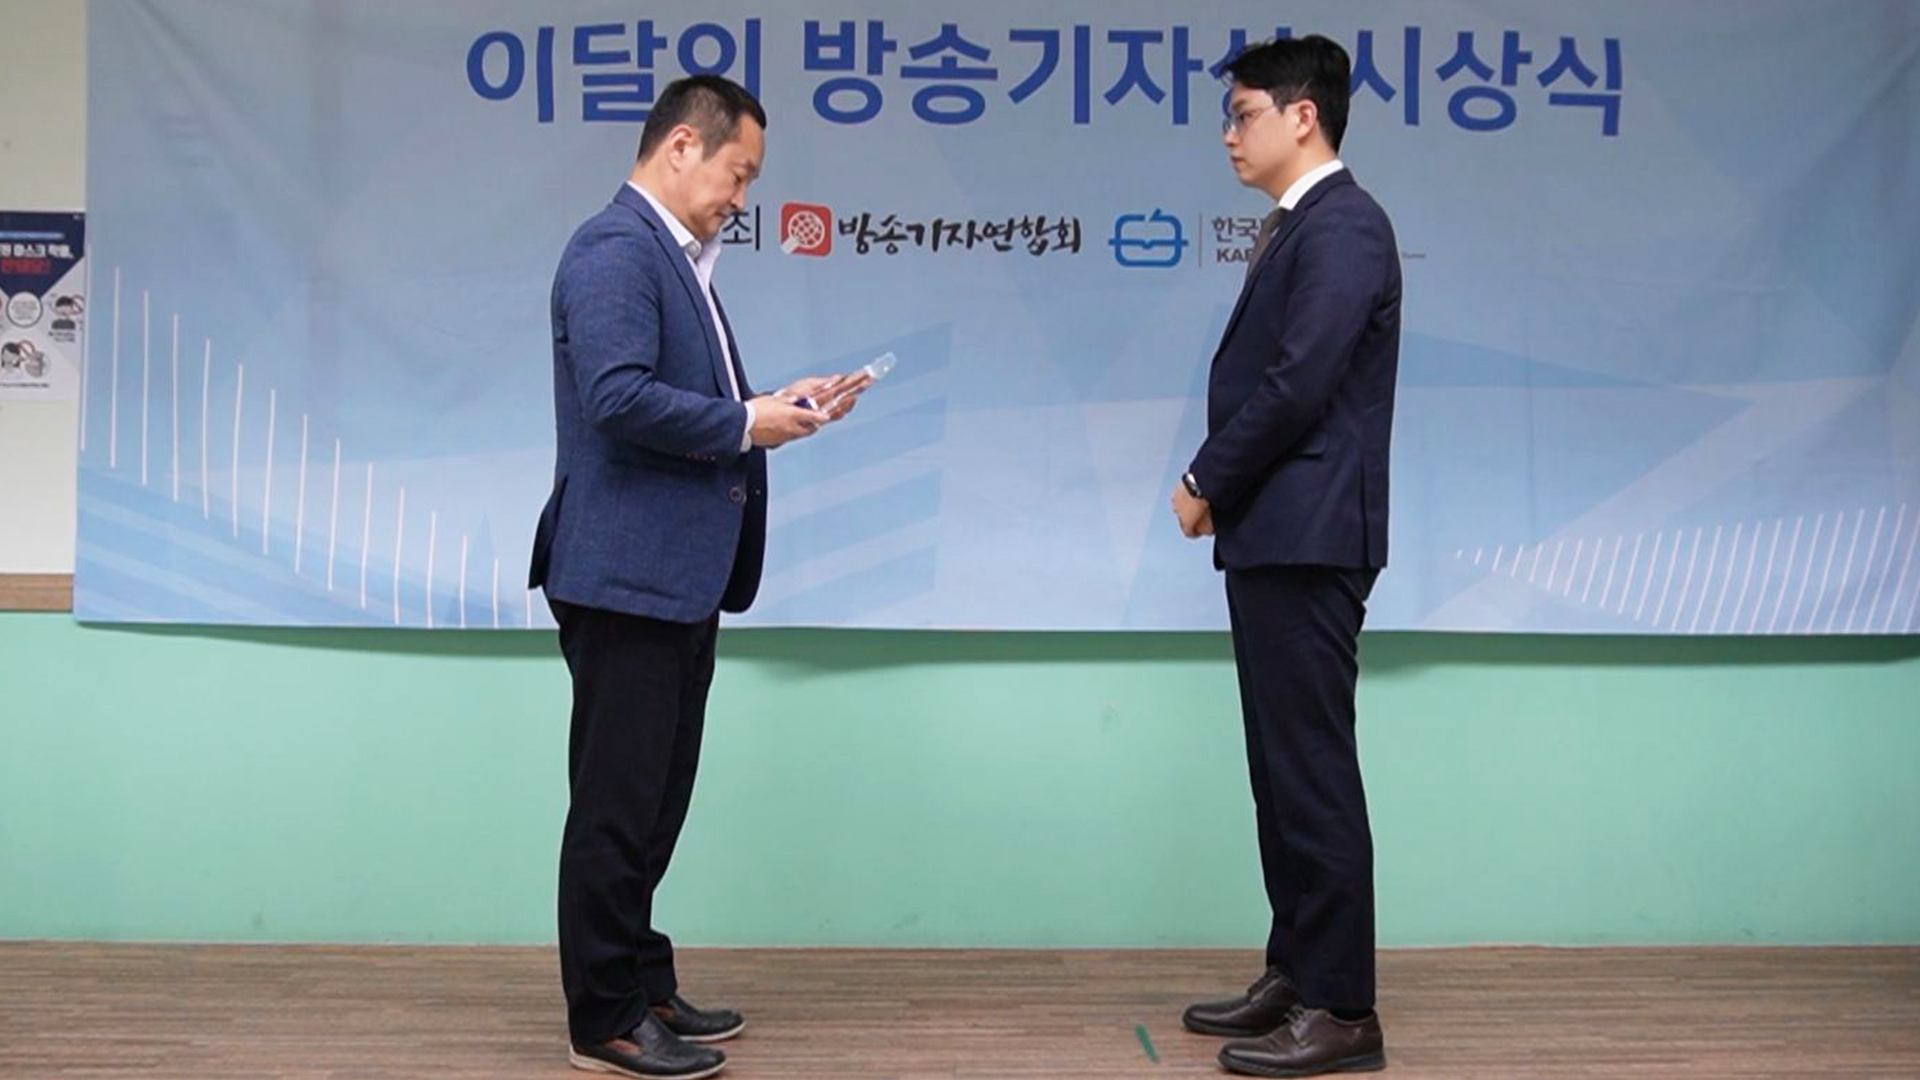 전주MBC 신동진 졸속퇴출 팩트체크 연속보도, 이달의 방송기자상 수상